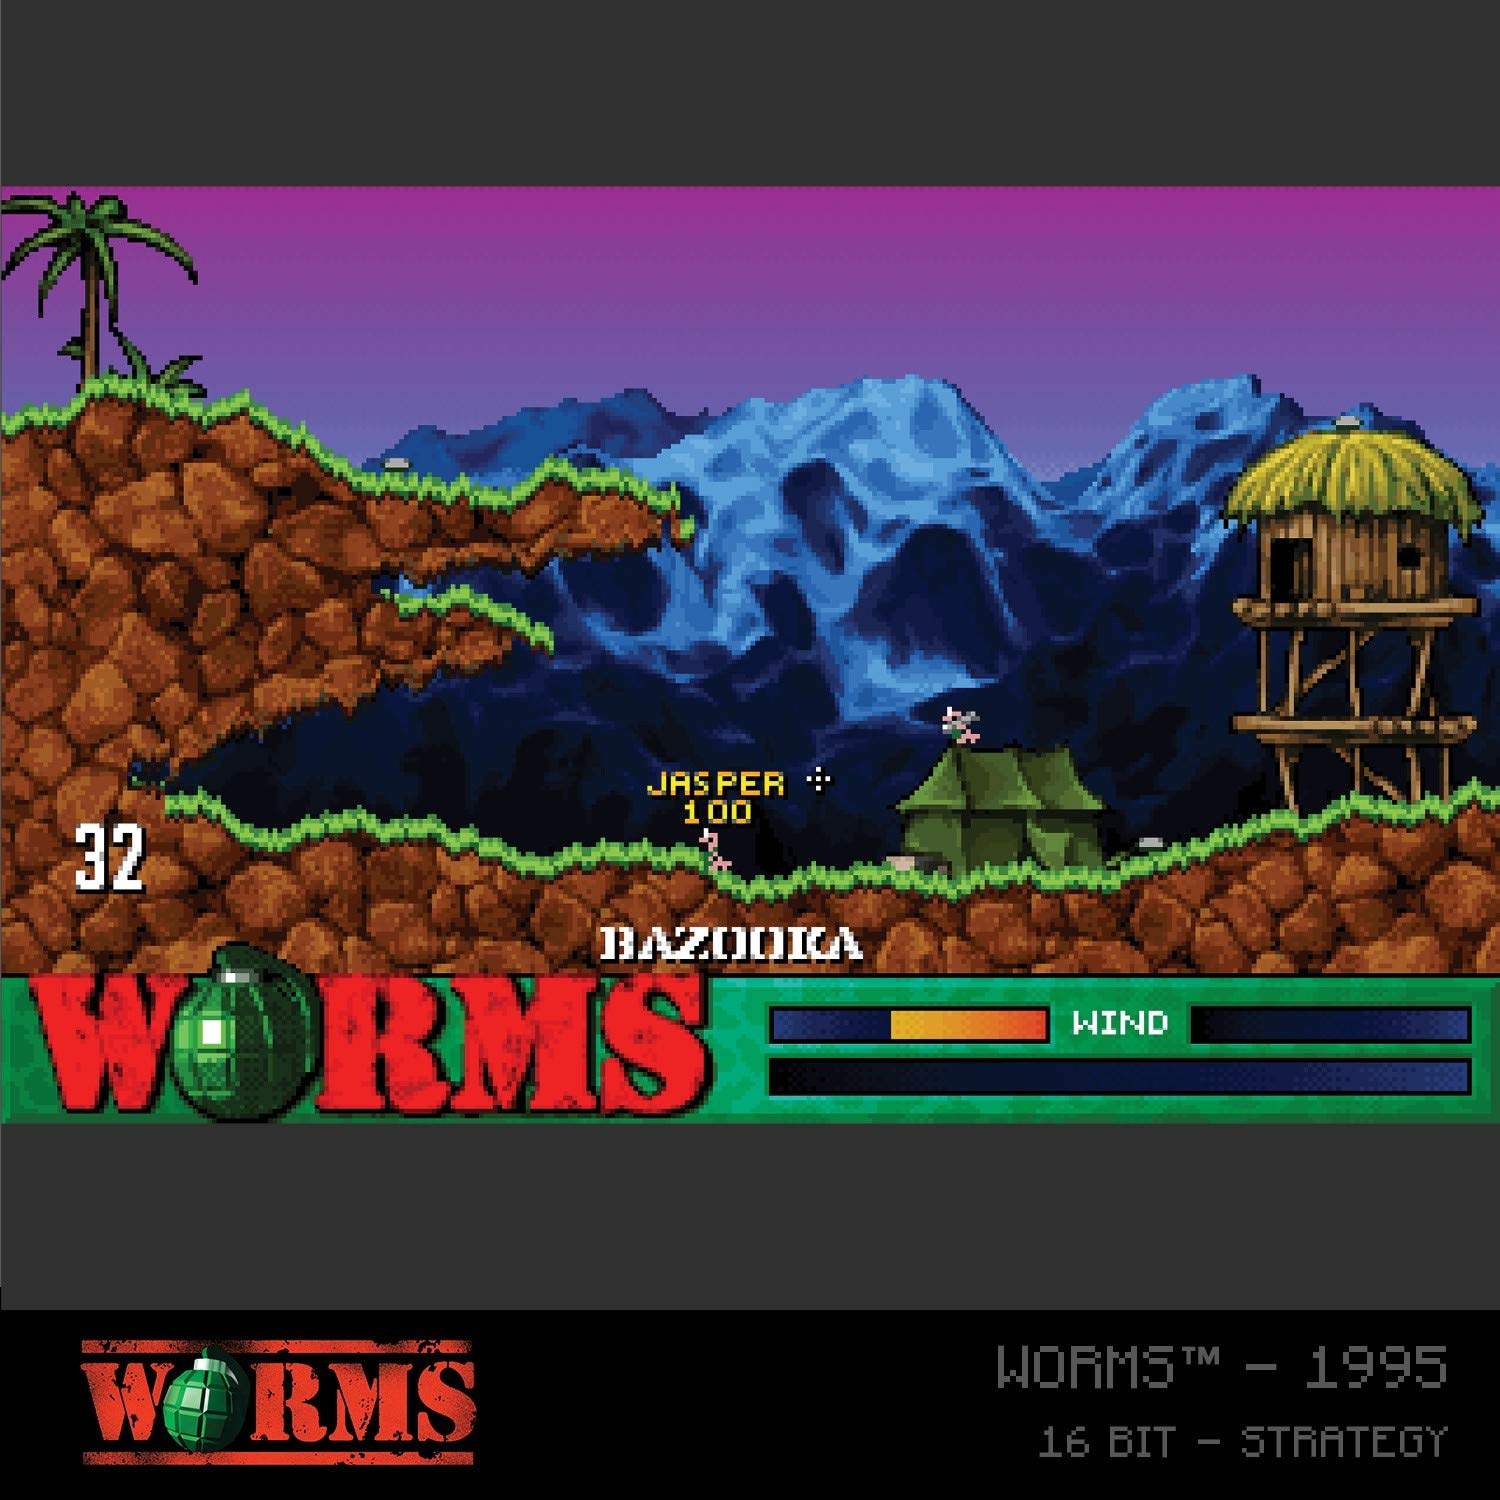 Blaze Evercade Worms Collection 1 - Nintendo DS